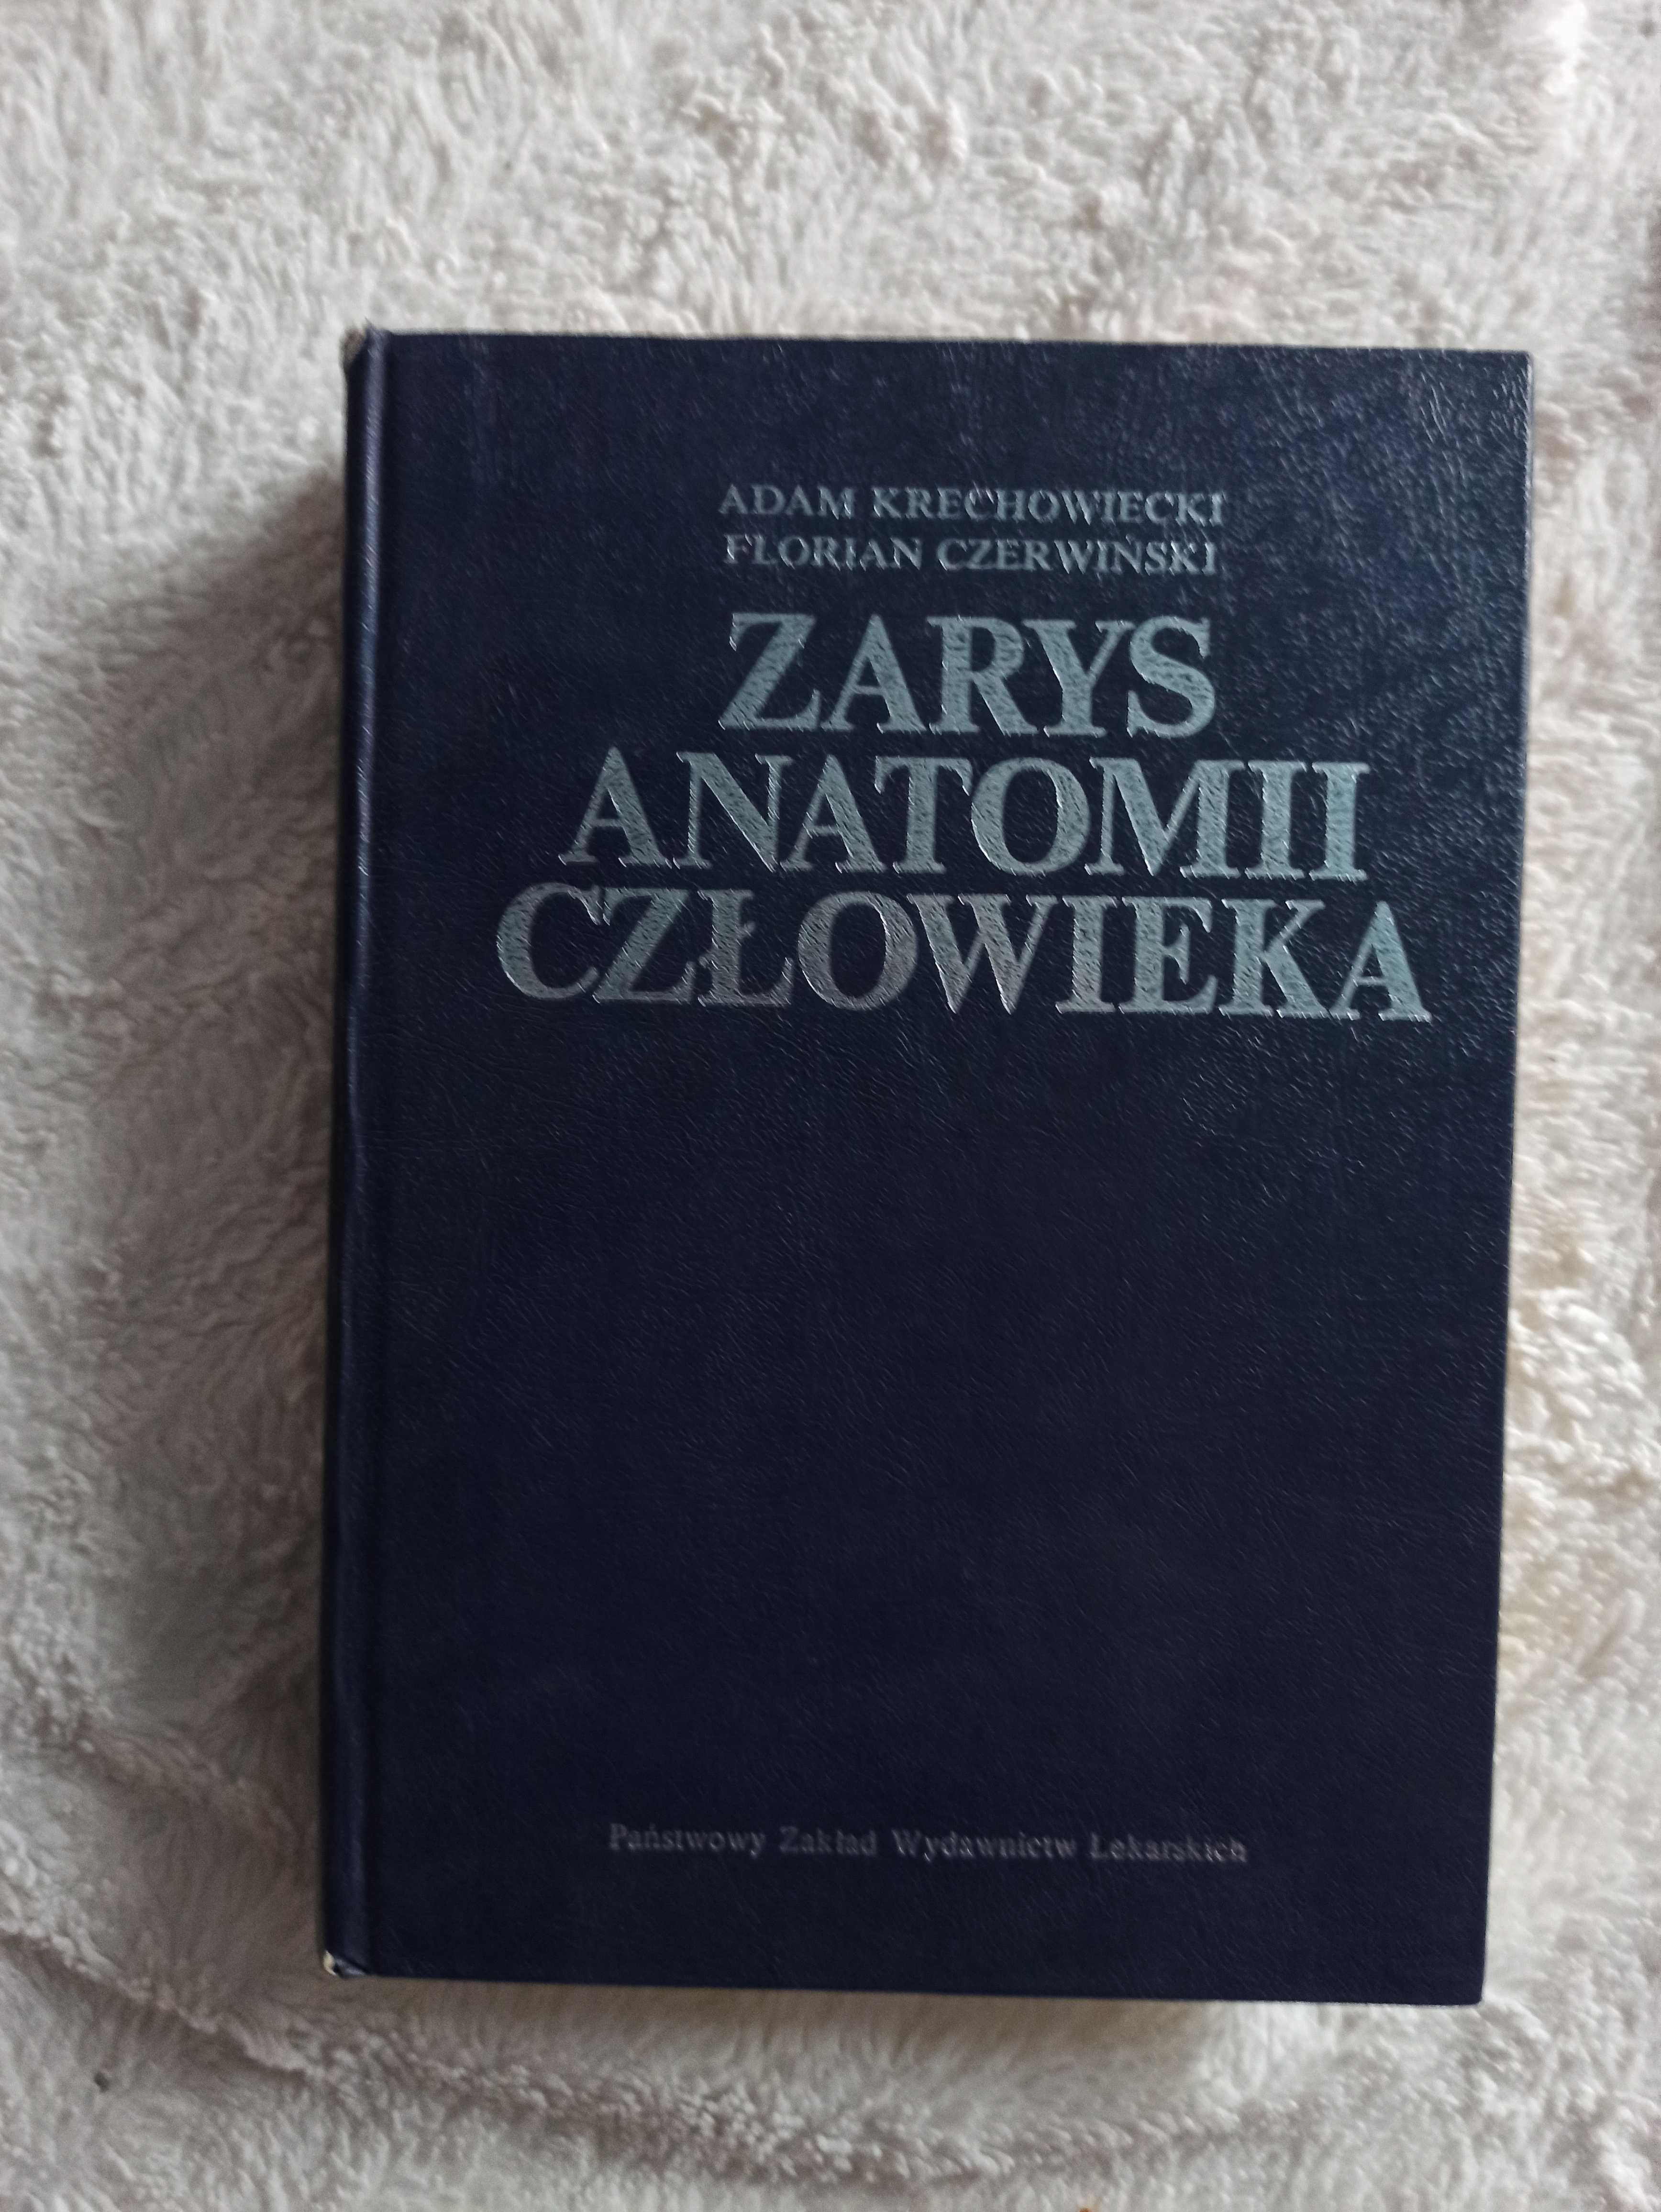 A. Krechowiecki, F. Czerwiński "Zarys anatomii człowieka", medycyna